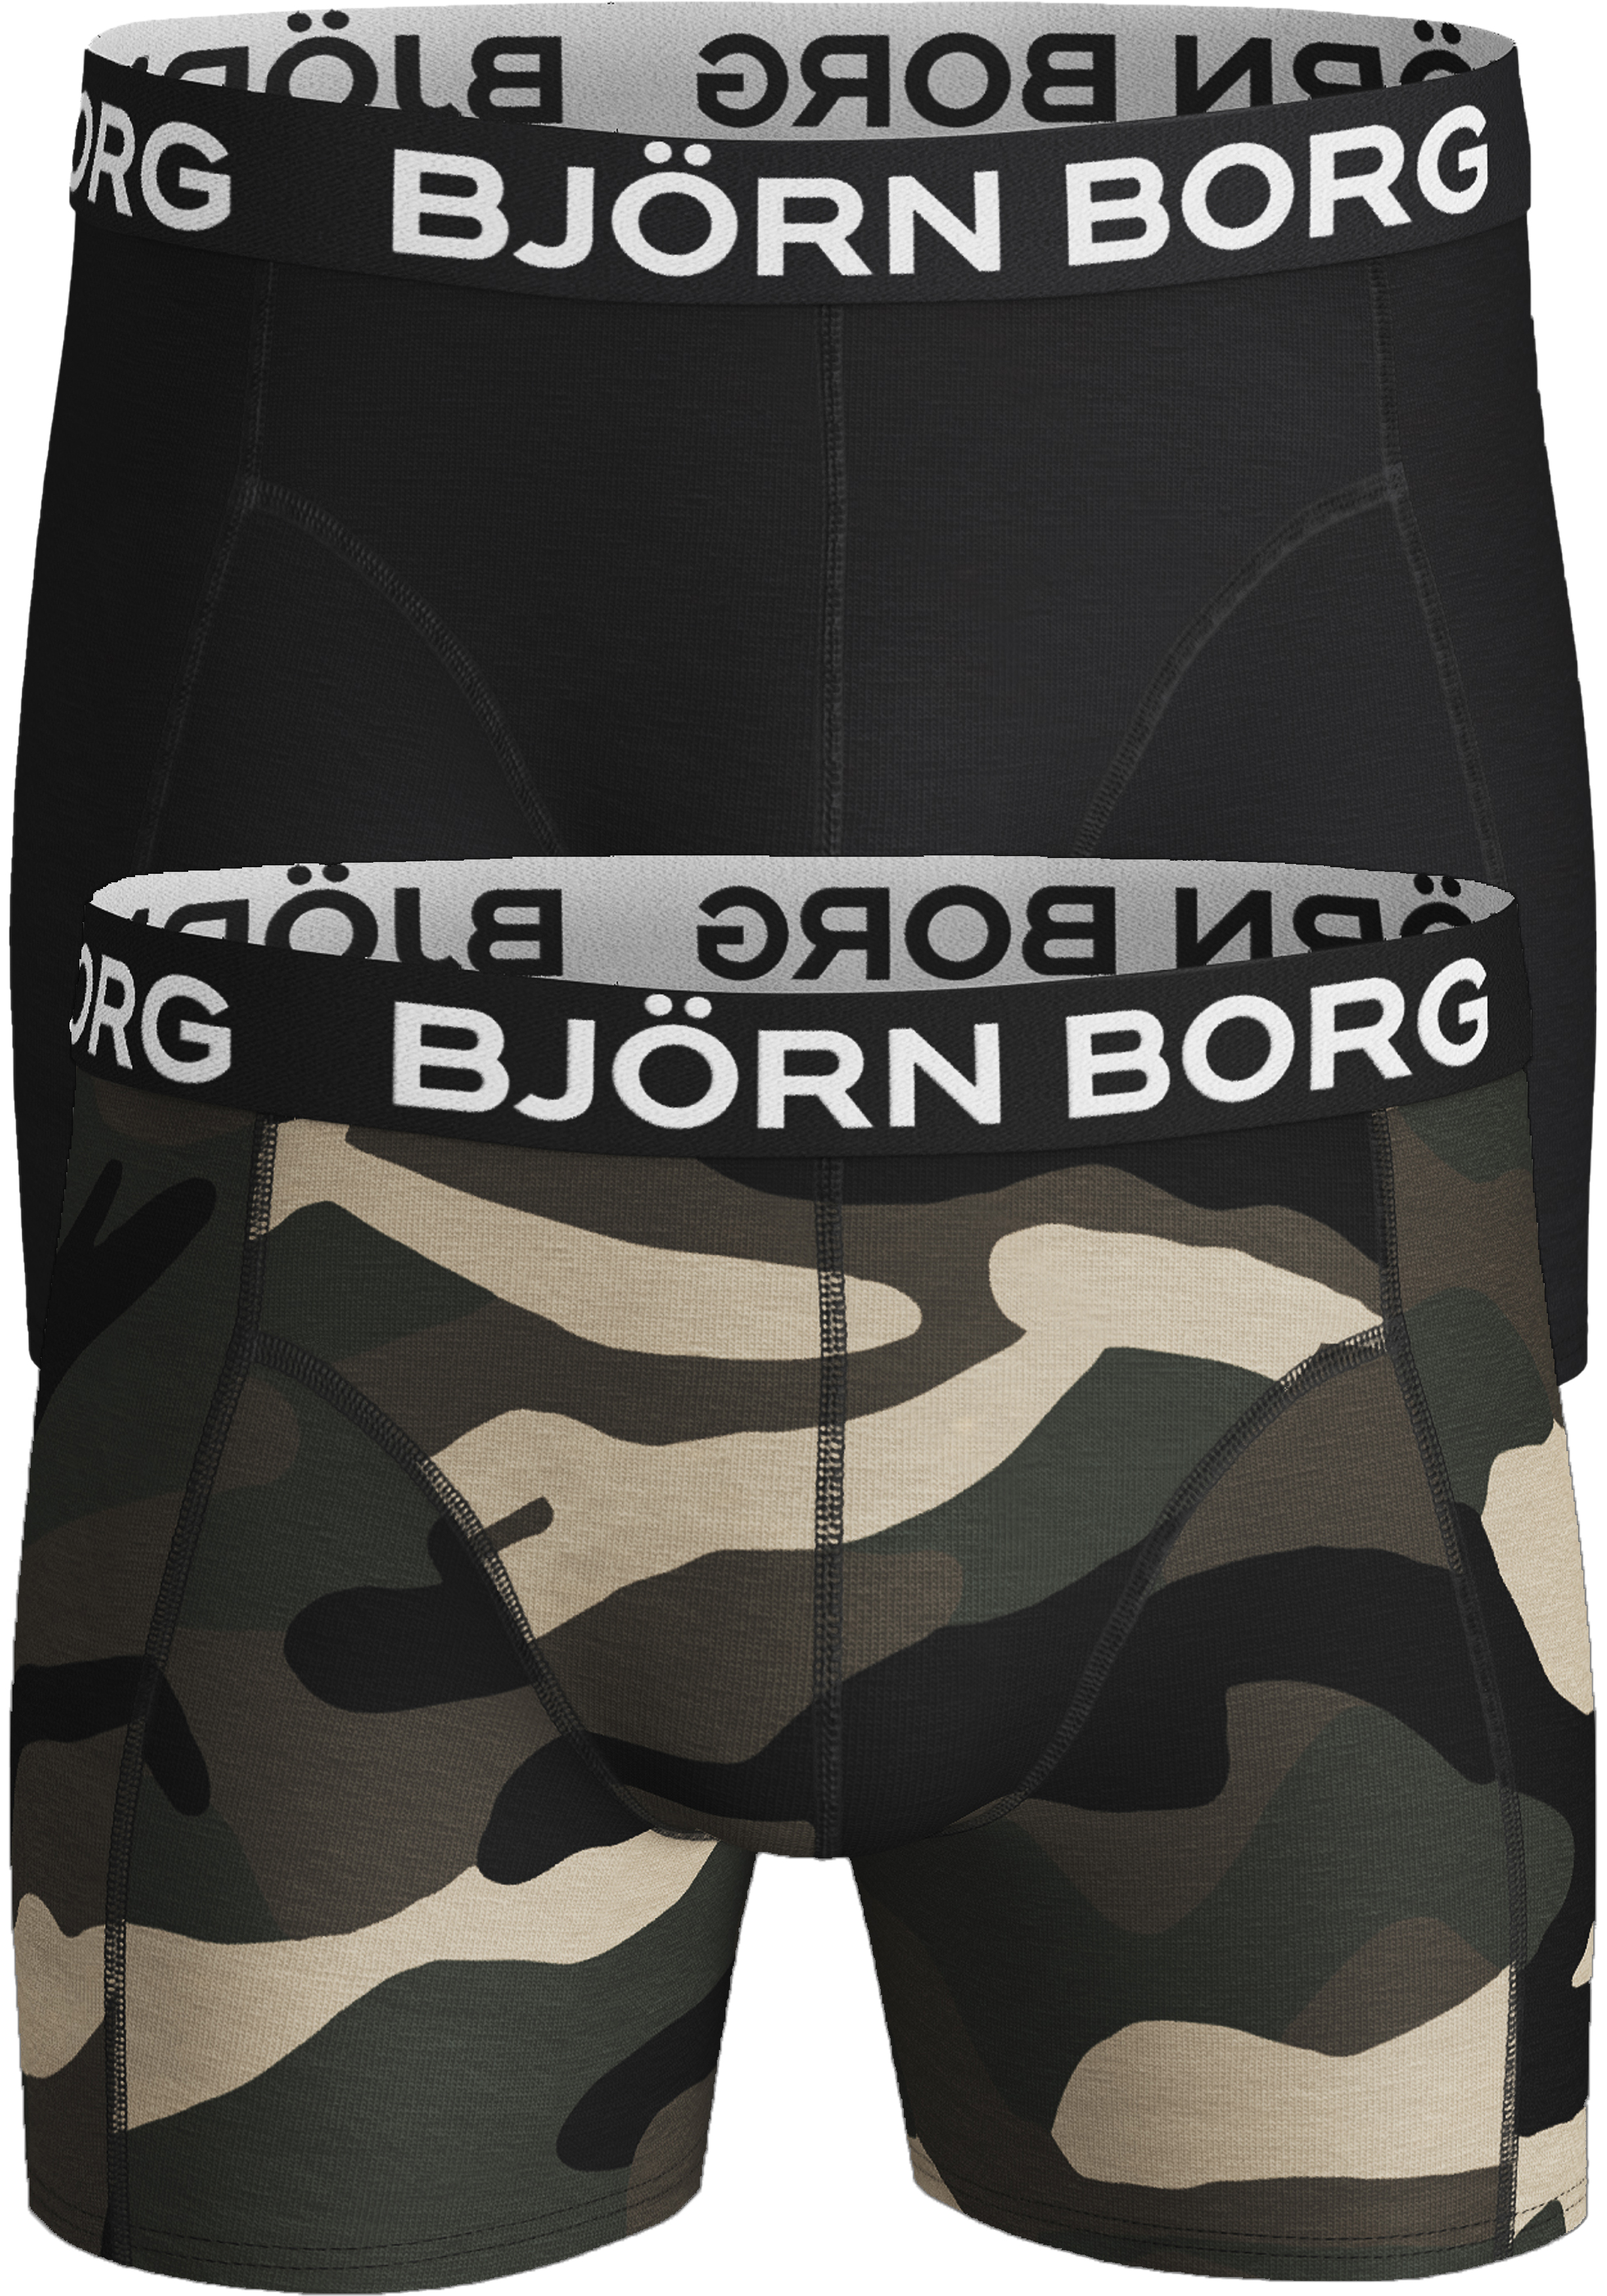 Bjorn Borg boxershorts Core (2-pack), heren boxers normale lengte,... - De eerste voorjaarscollecties binnen